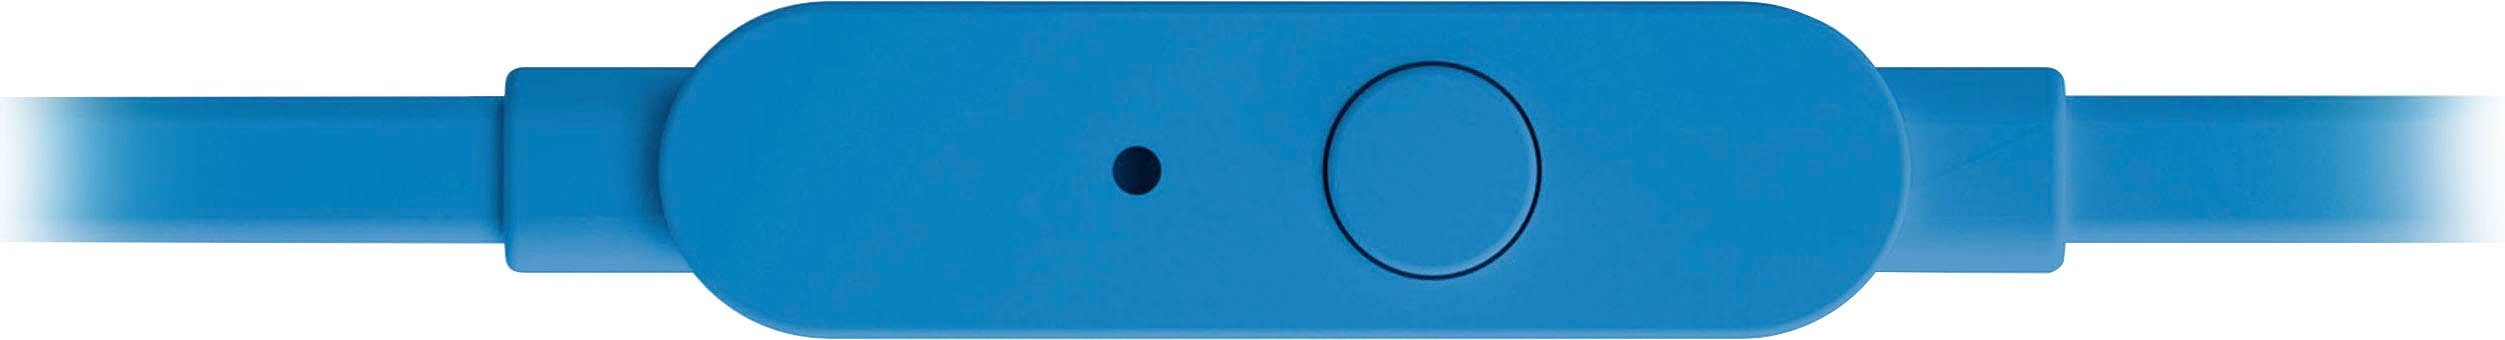 T110 In-Ear-Kopfhörer JBL blau